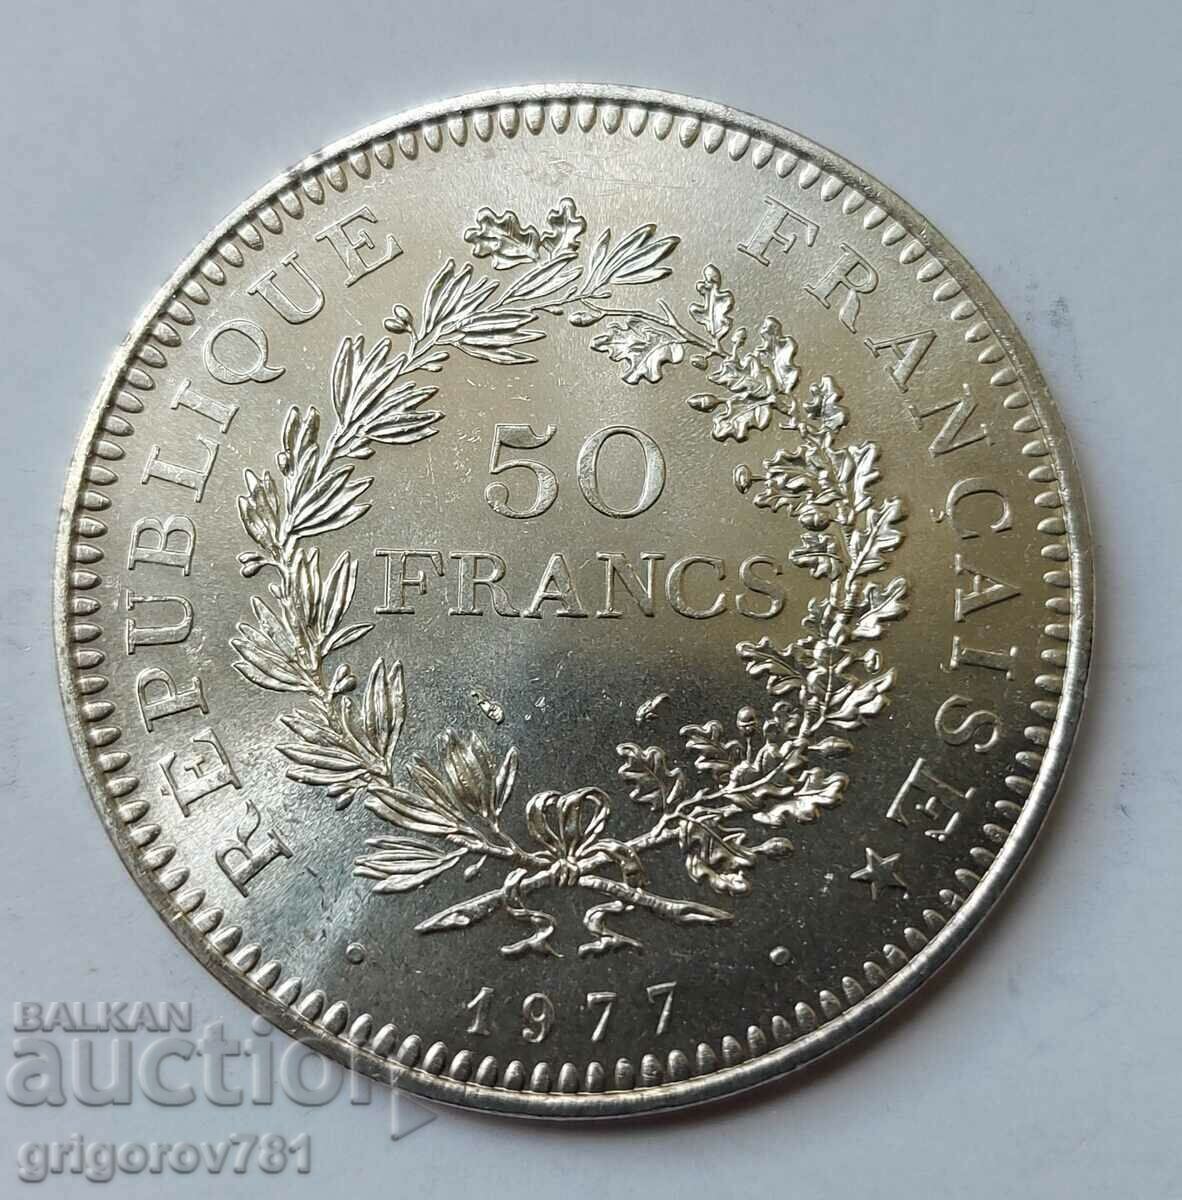 50 Franci Argint Franta 1977 - Moneda de argint #38